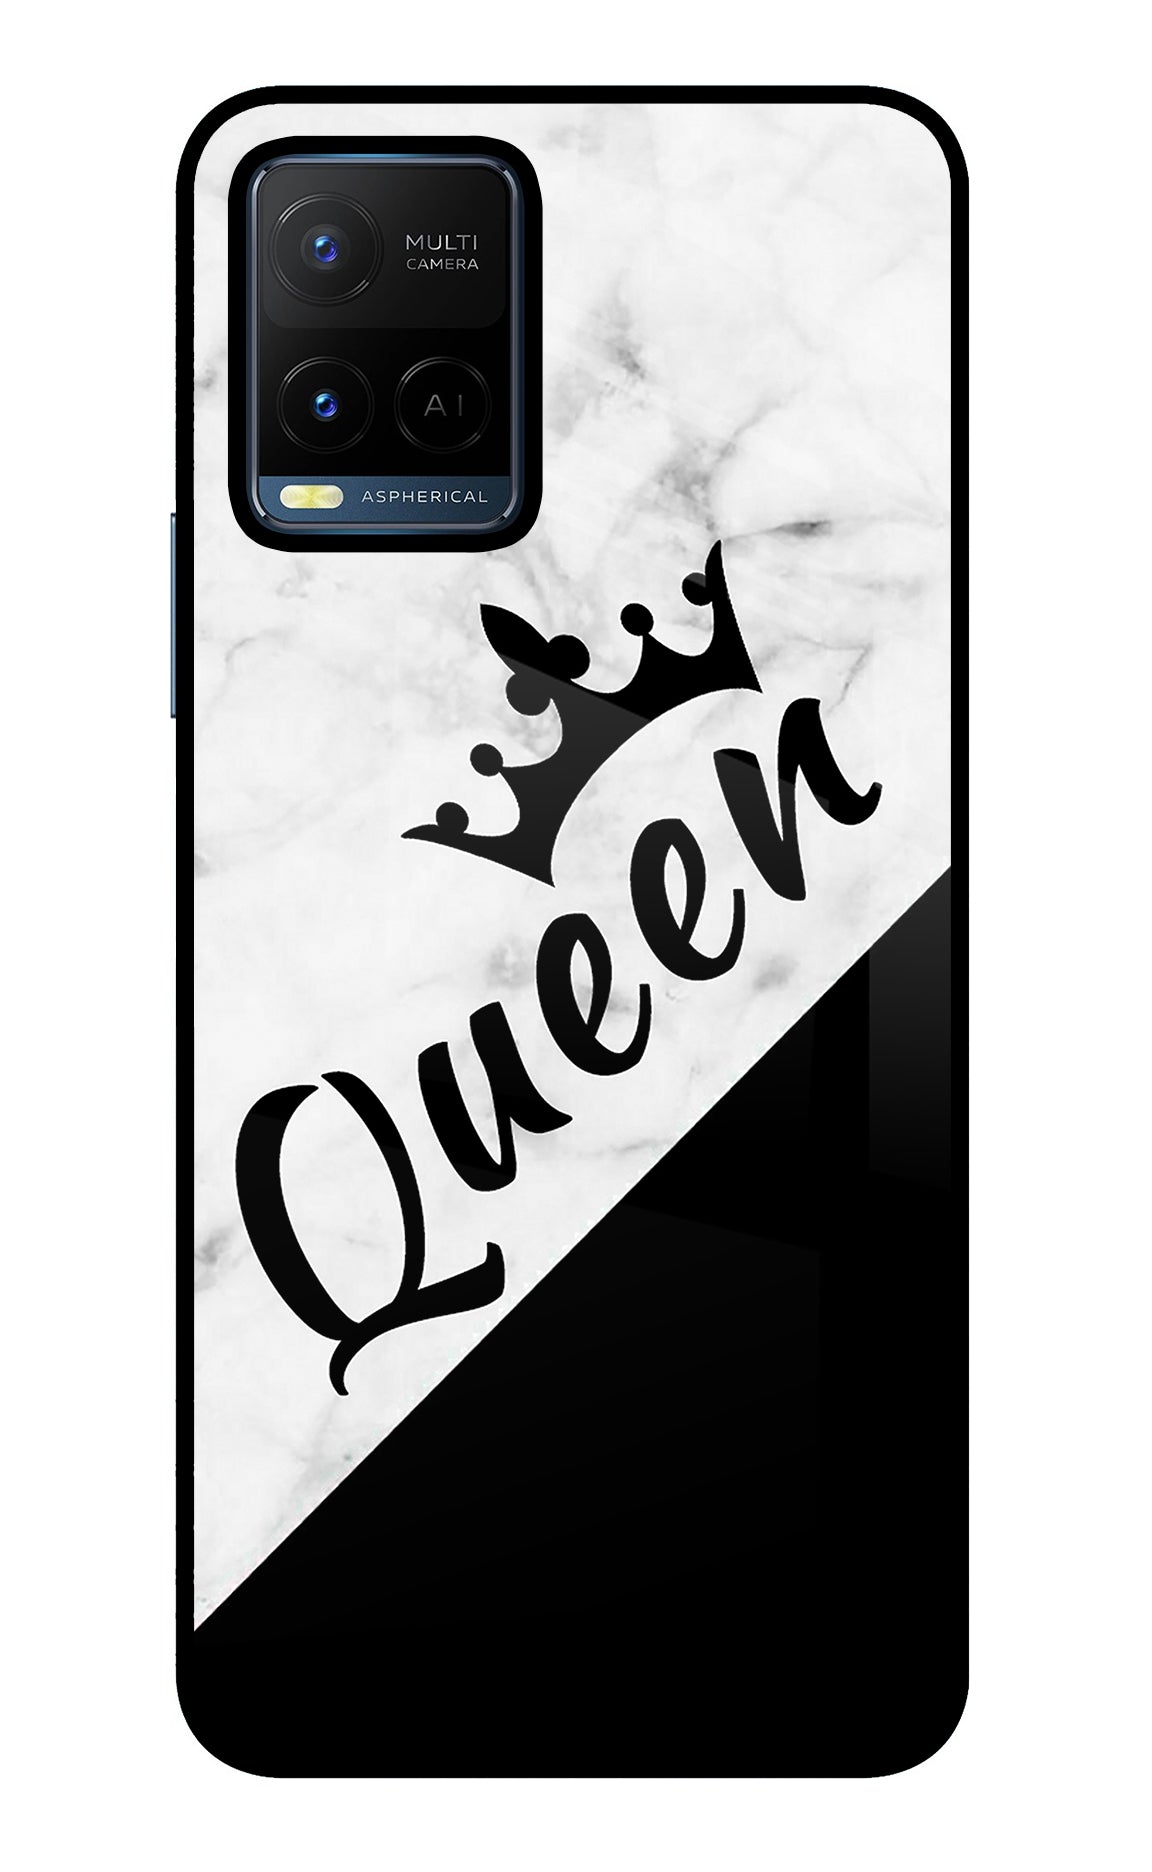 Queen Vivo Y21/Y21s/Y33s Back Cover